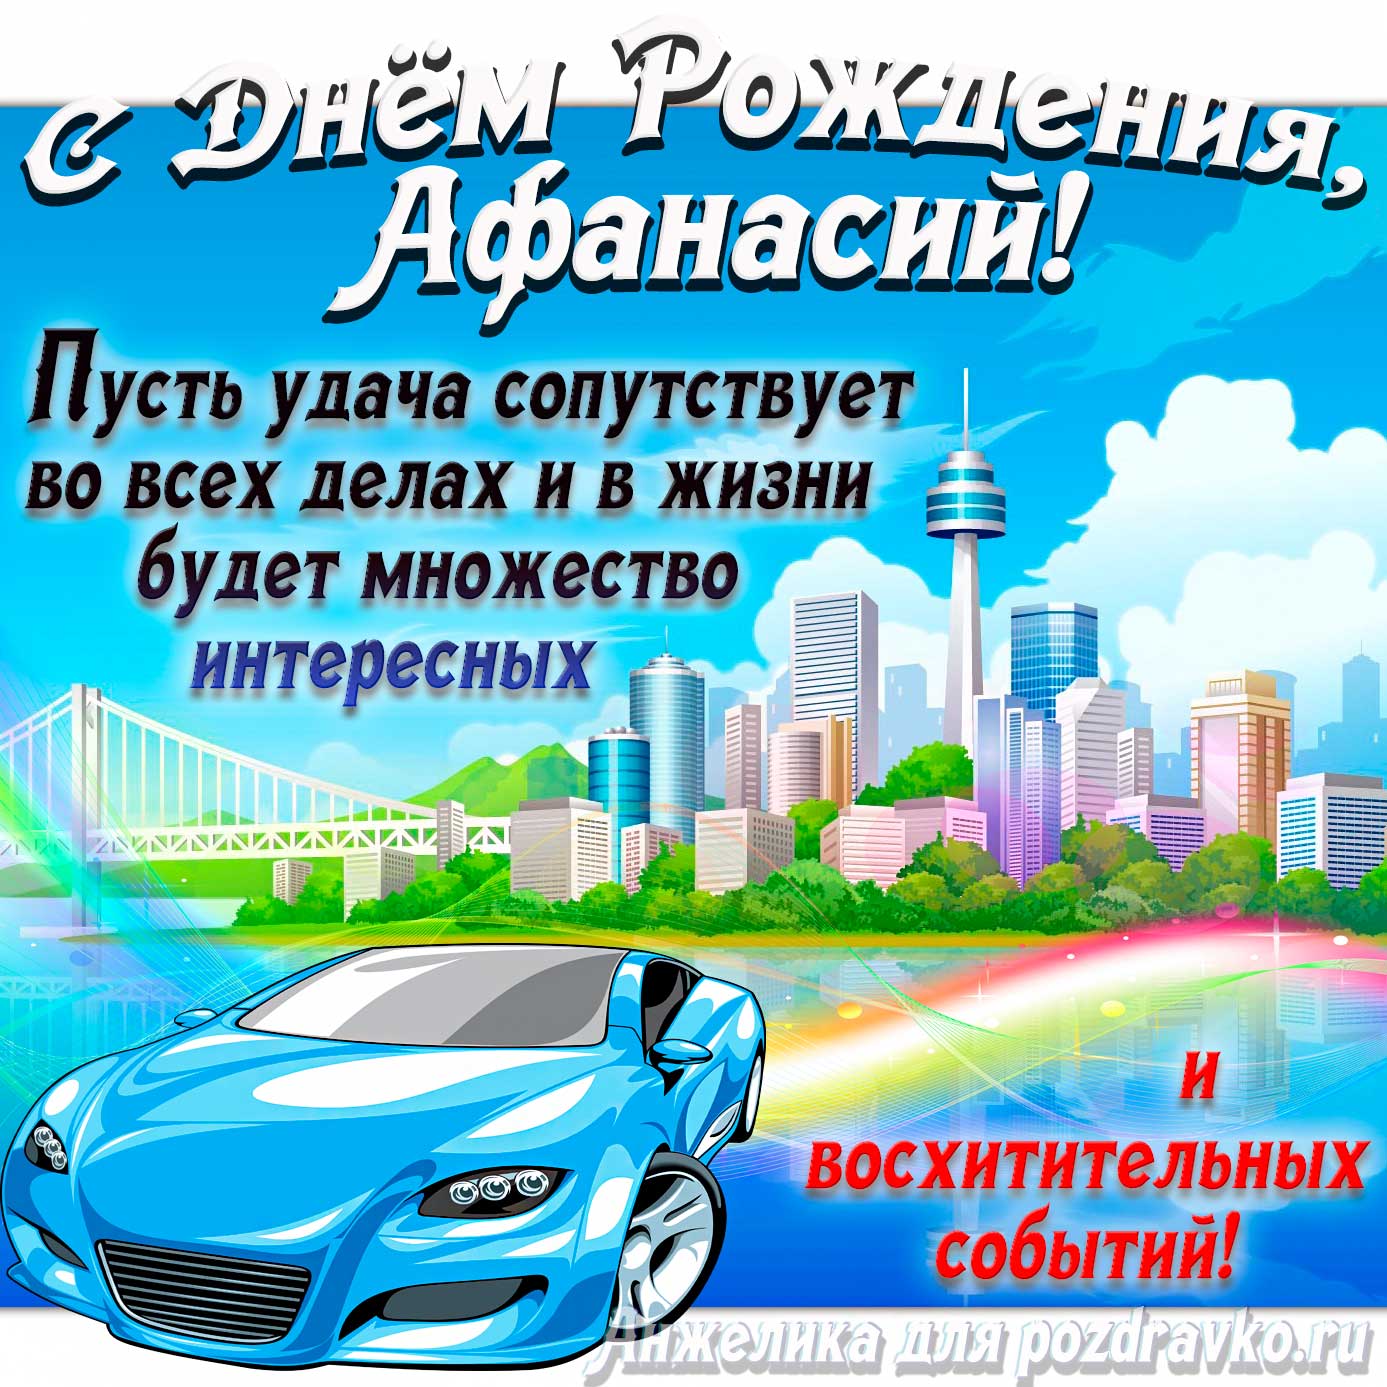 Открытка - с Днём Рождения Афанасий с голубой машиной и пожеланием. Скачать бесплатно или отправить картинку.